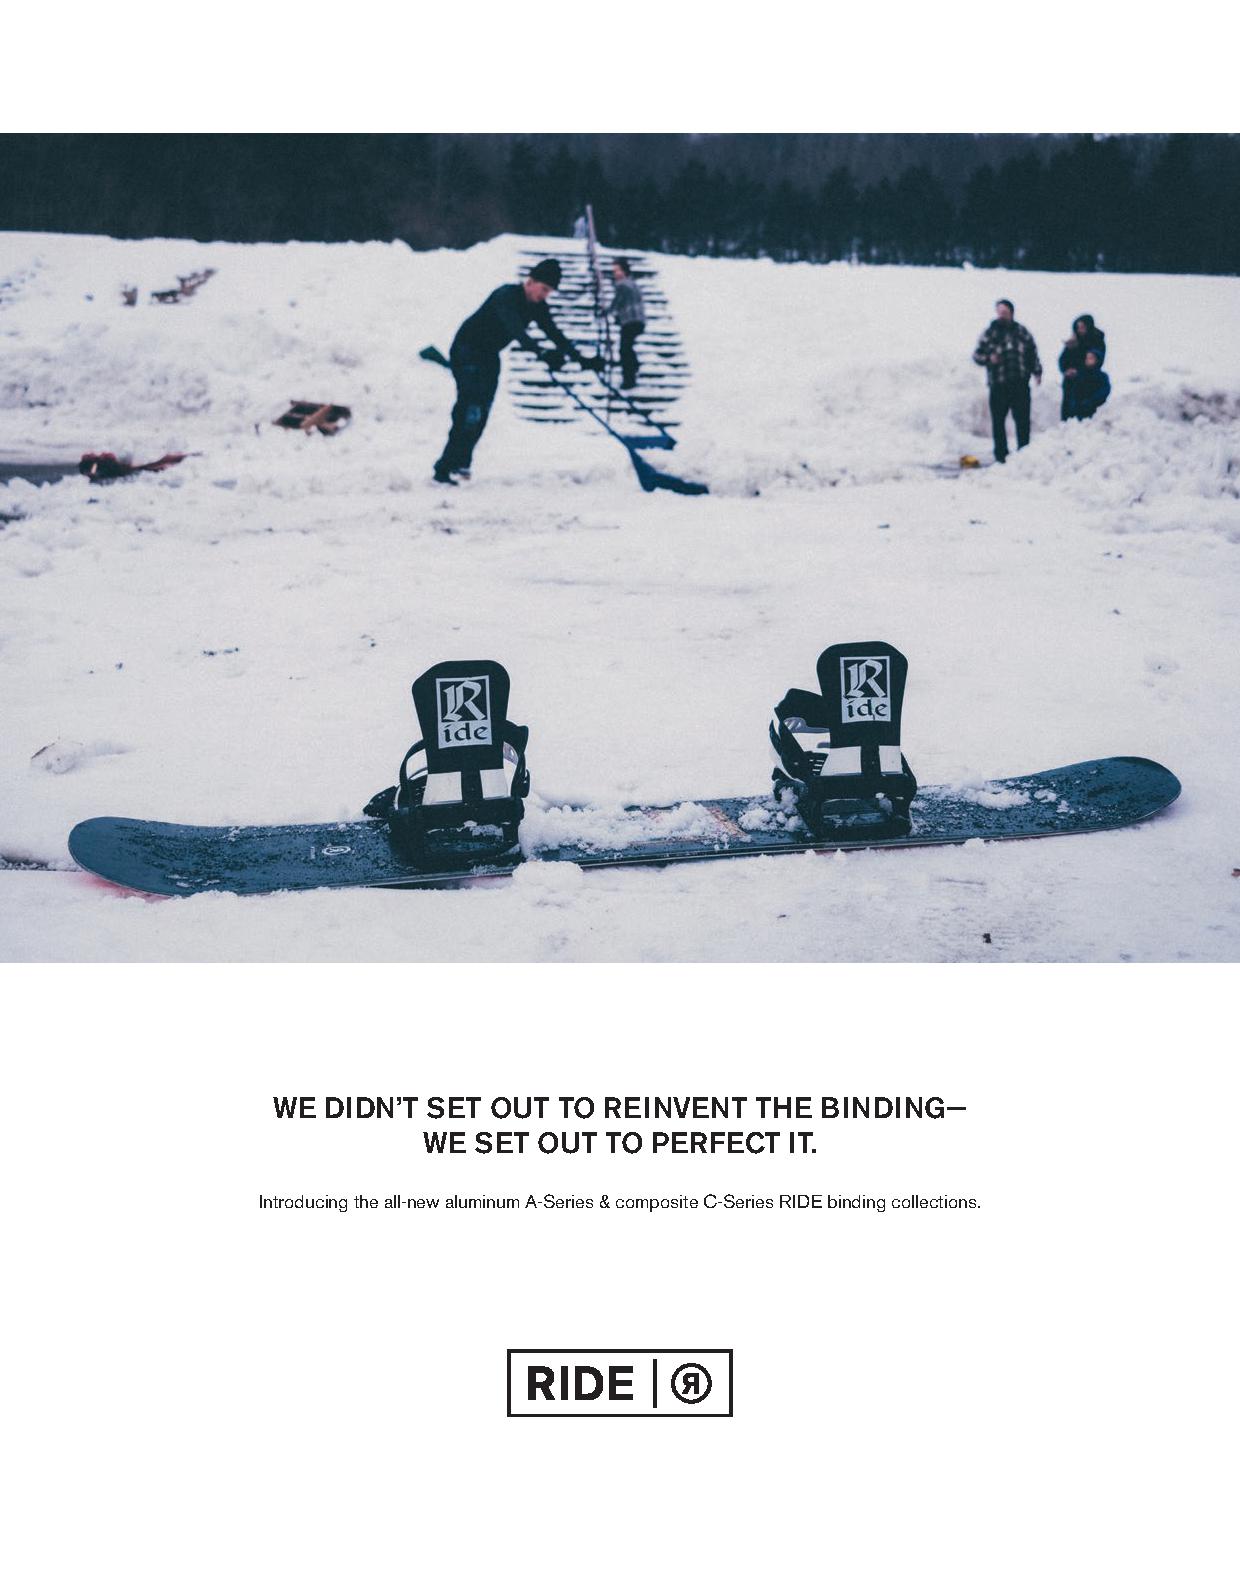 104 Ride snowboard boots ,snowboard bindings, splitboarding